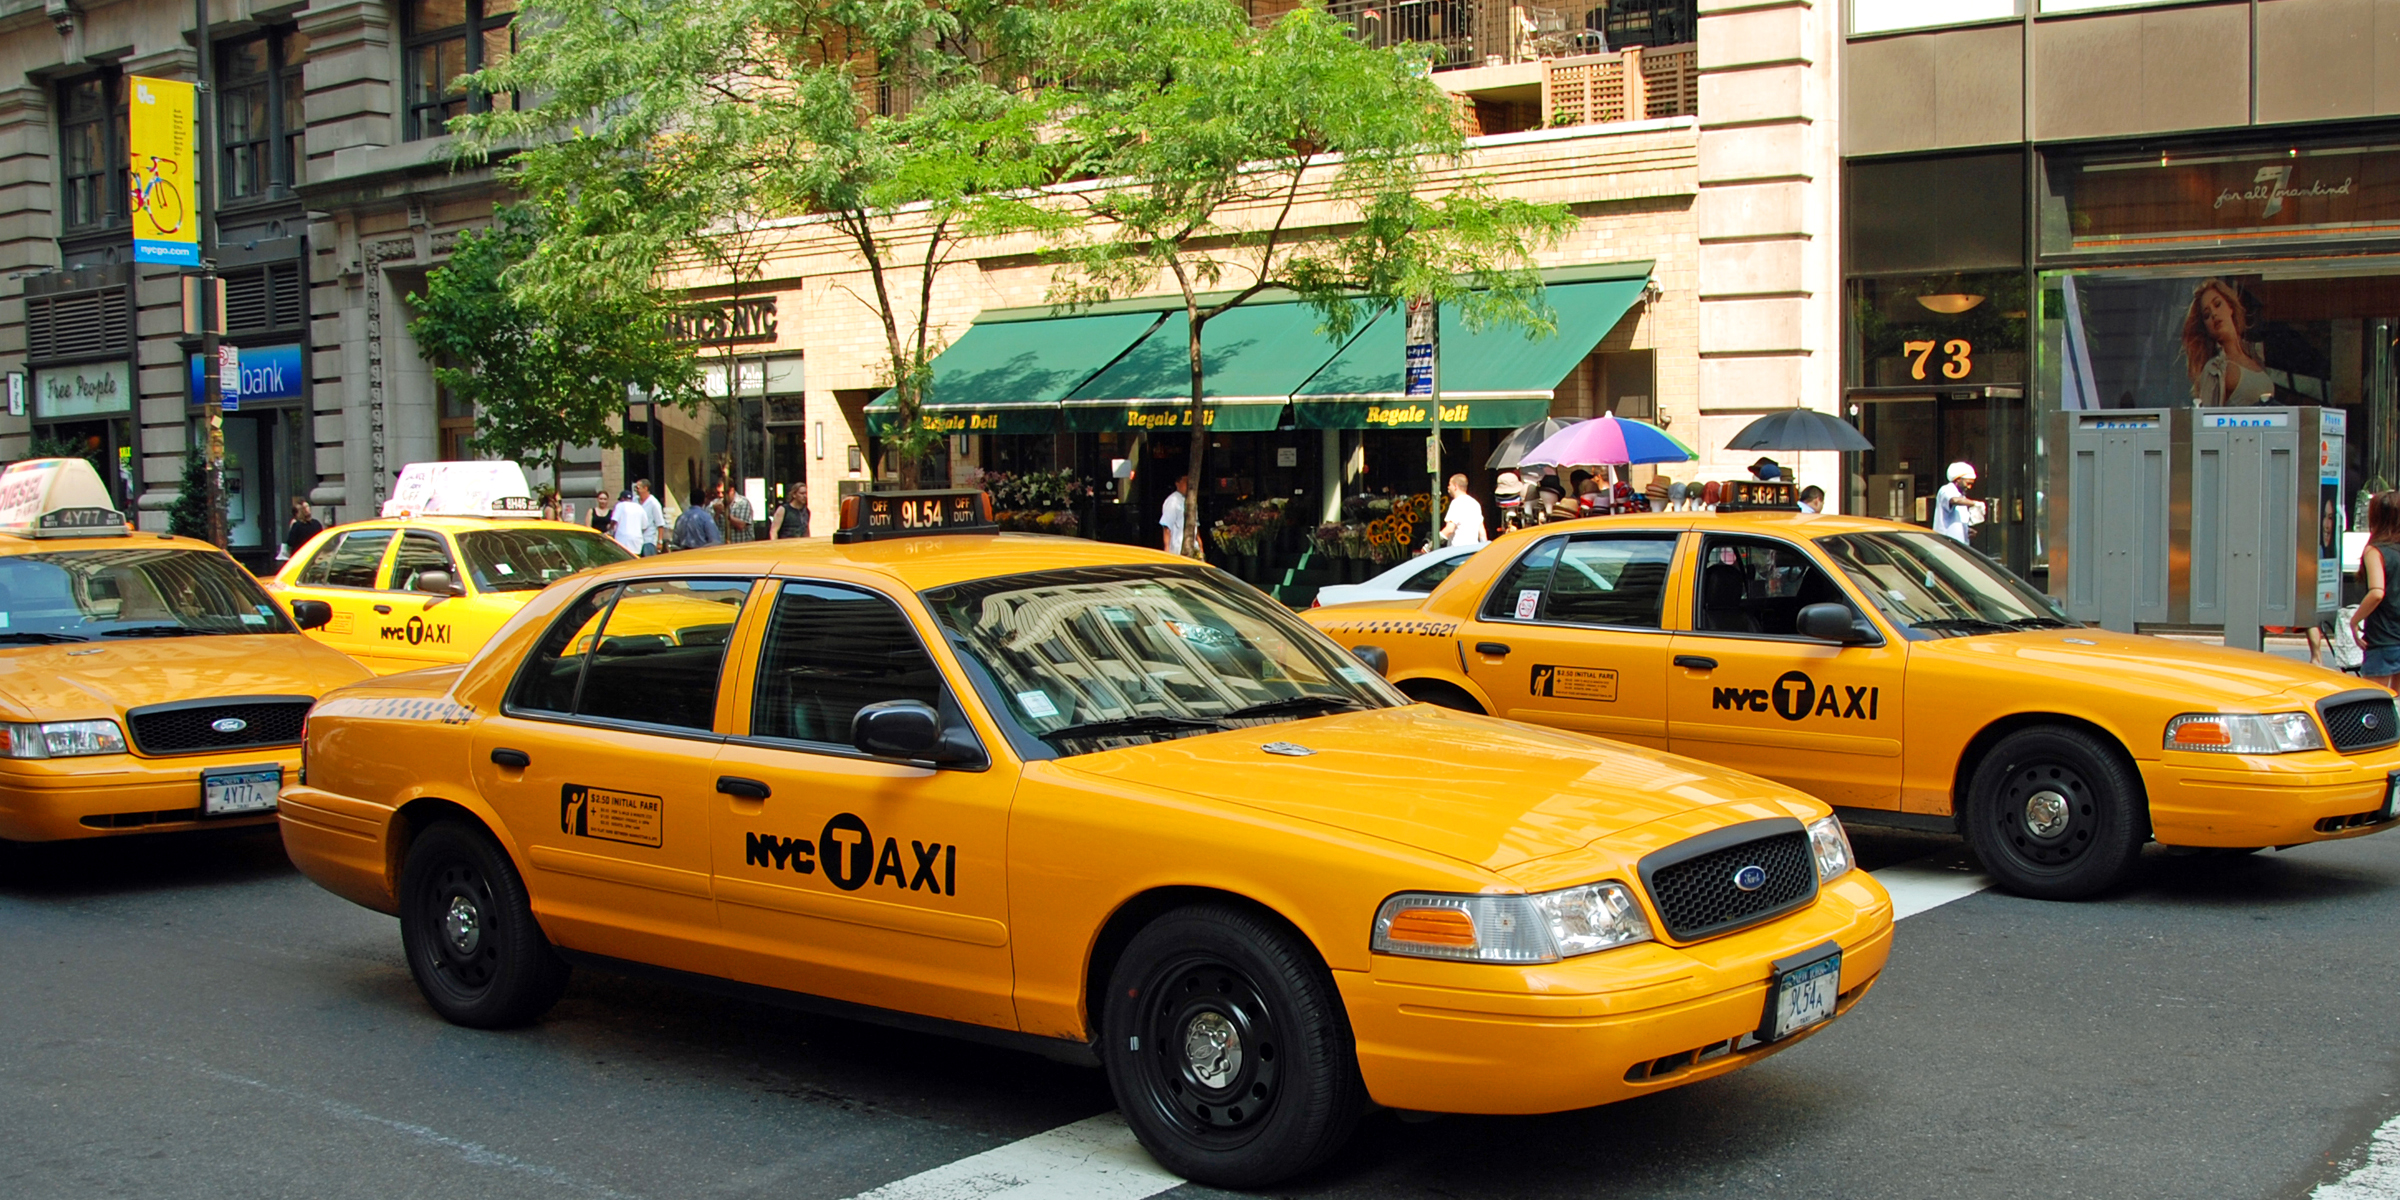 Des taxis dans une rue | Source : Shutterstock